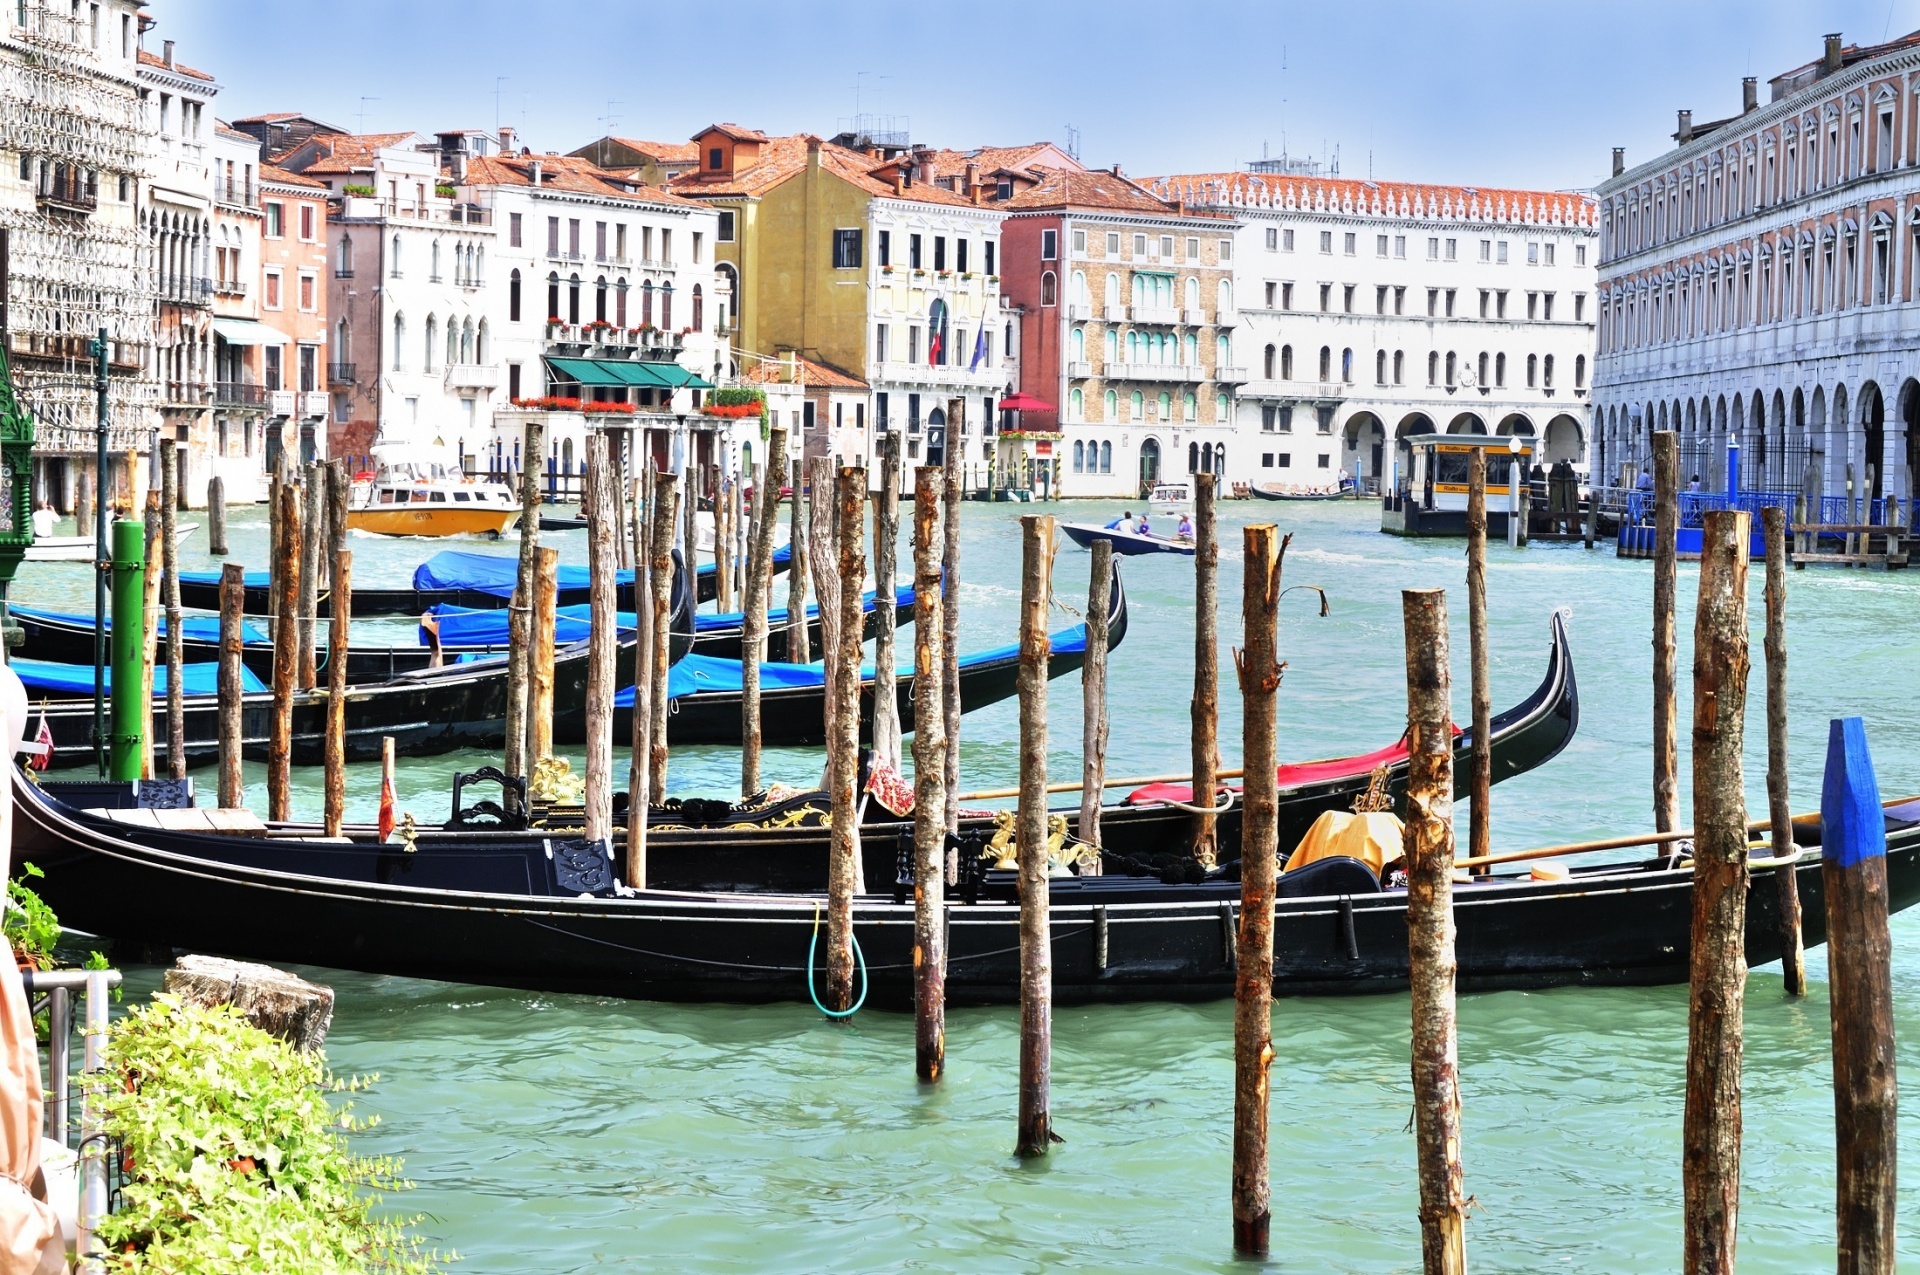 图片素材 : 威尼斯, 建筑, 运河, 欧洲, 旅行, 桥, 建造, 旅游, 意大利语, 旧, 镇, 海, 吊船, 地标, 佛罗伦萨 ...